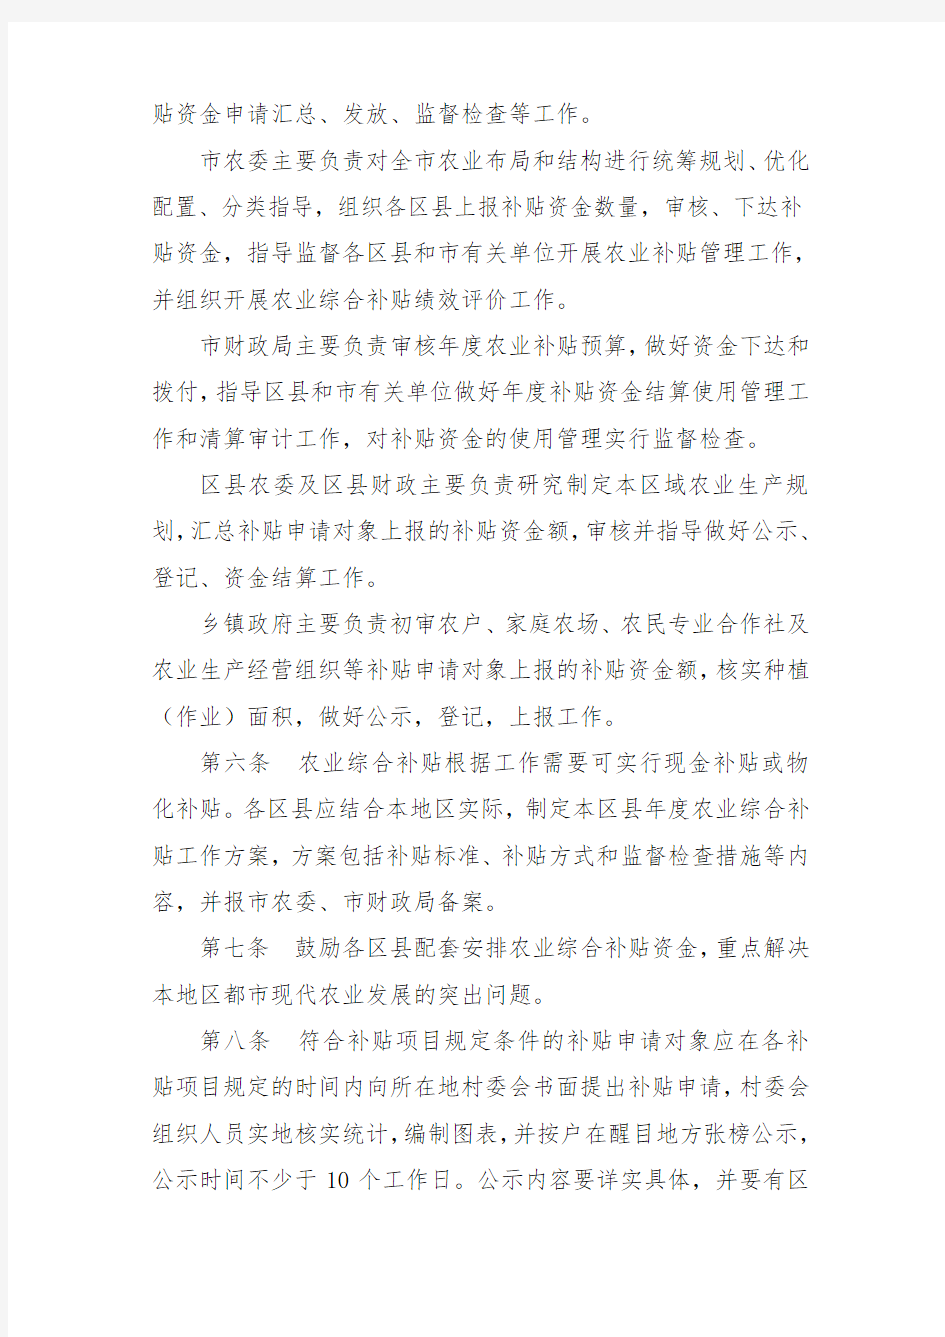 上海市市级财政农业综合补贴资金管理办法-上海市人民政府